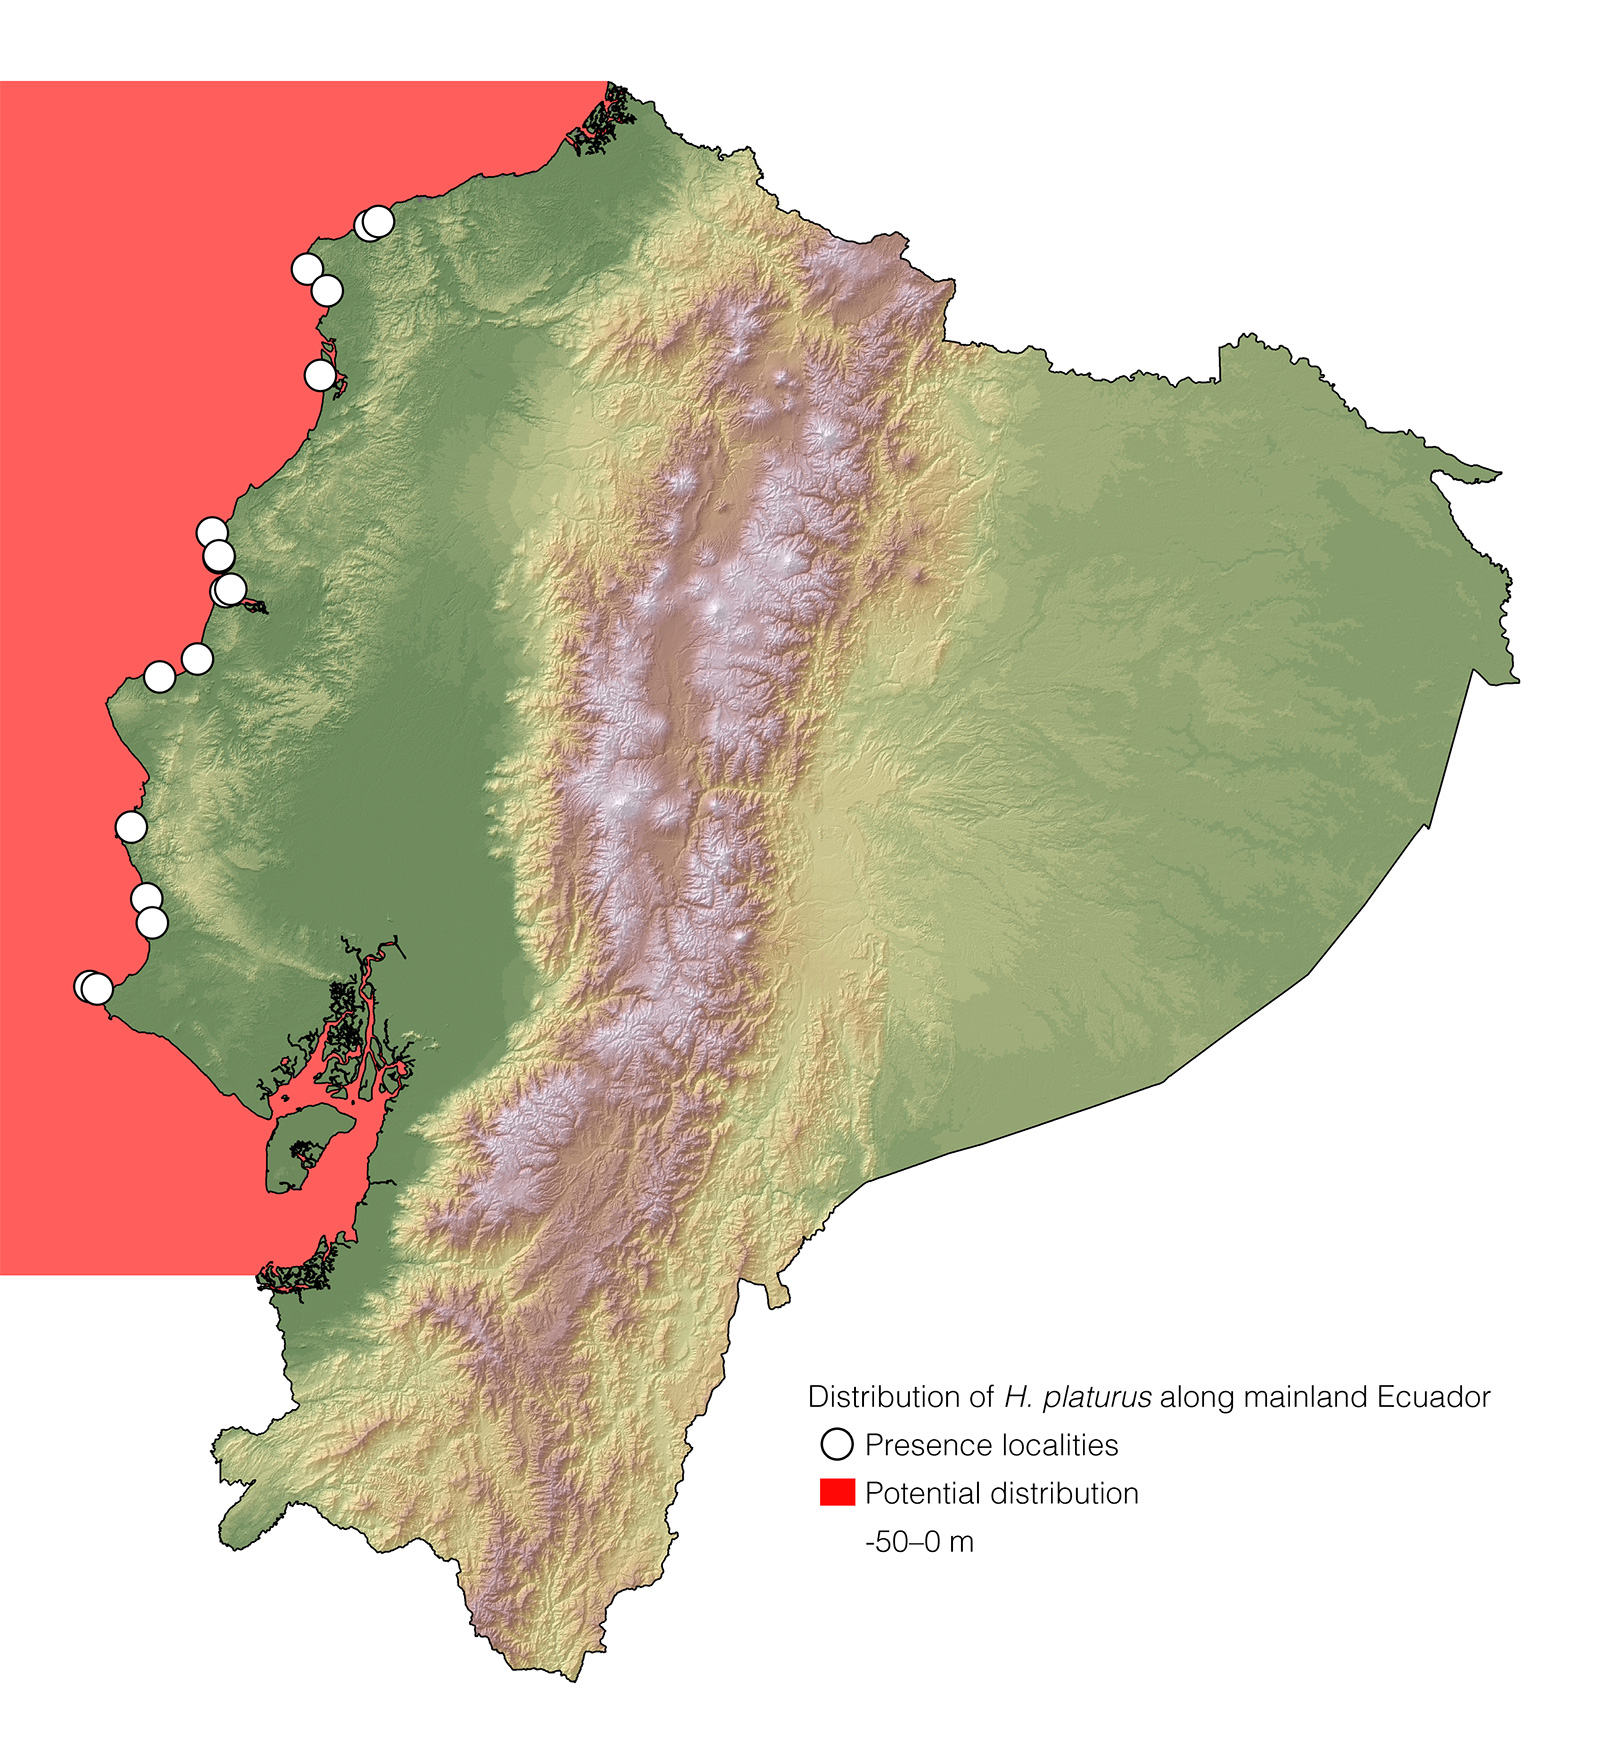 Distribution of Hydrophis platurus in mainland Ecuador